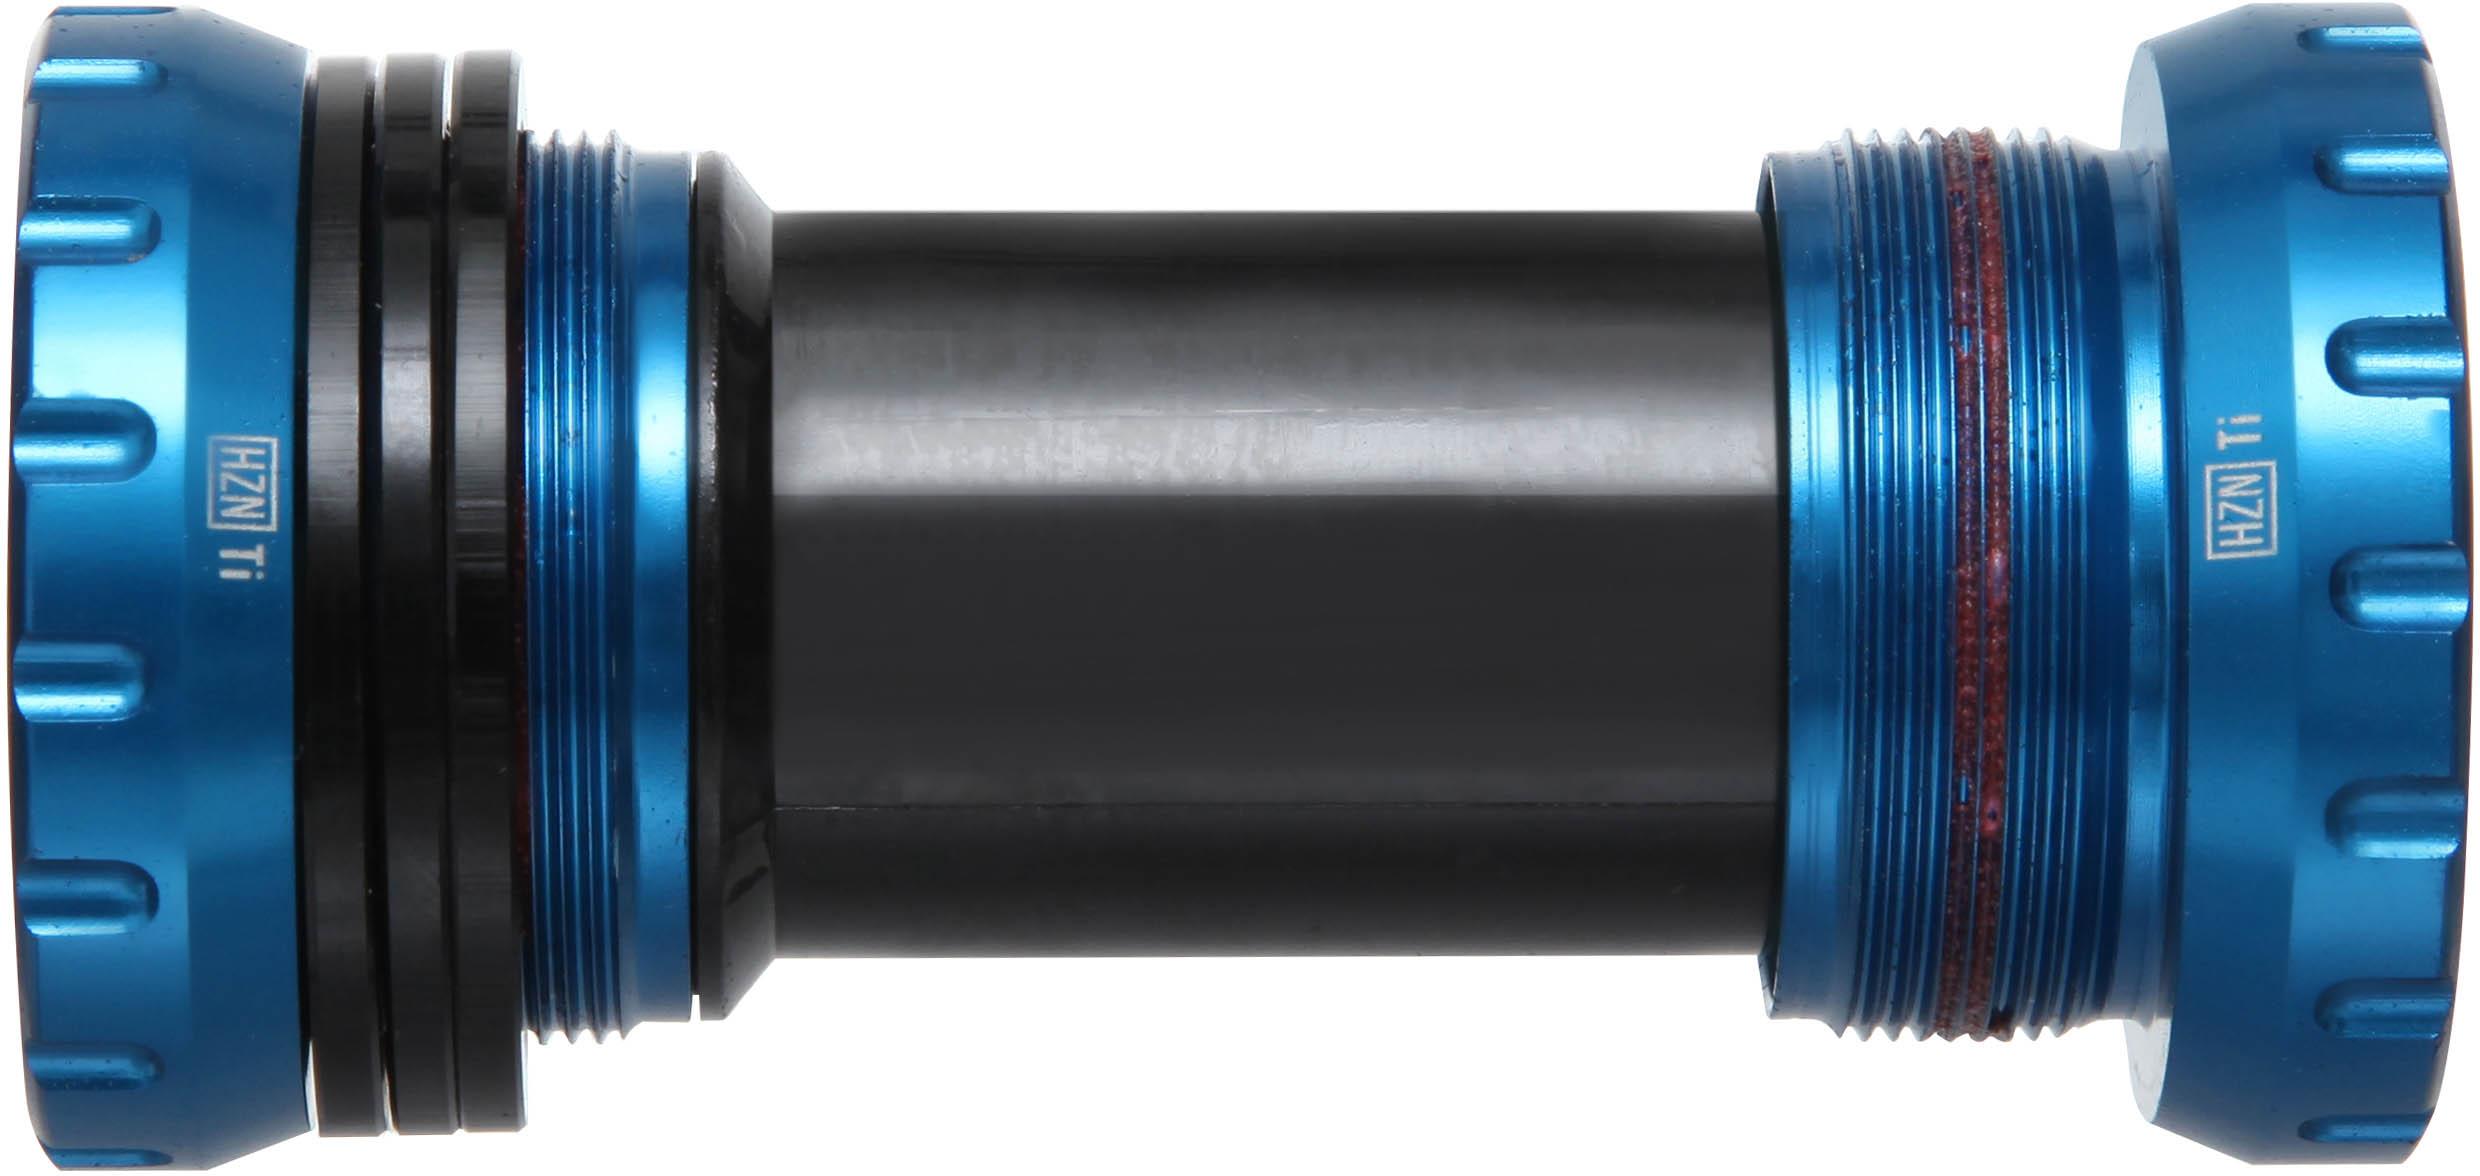 Nukeproof Horizon Shimano Bottom Bracket (24mm) - Blue